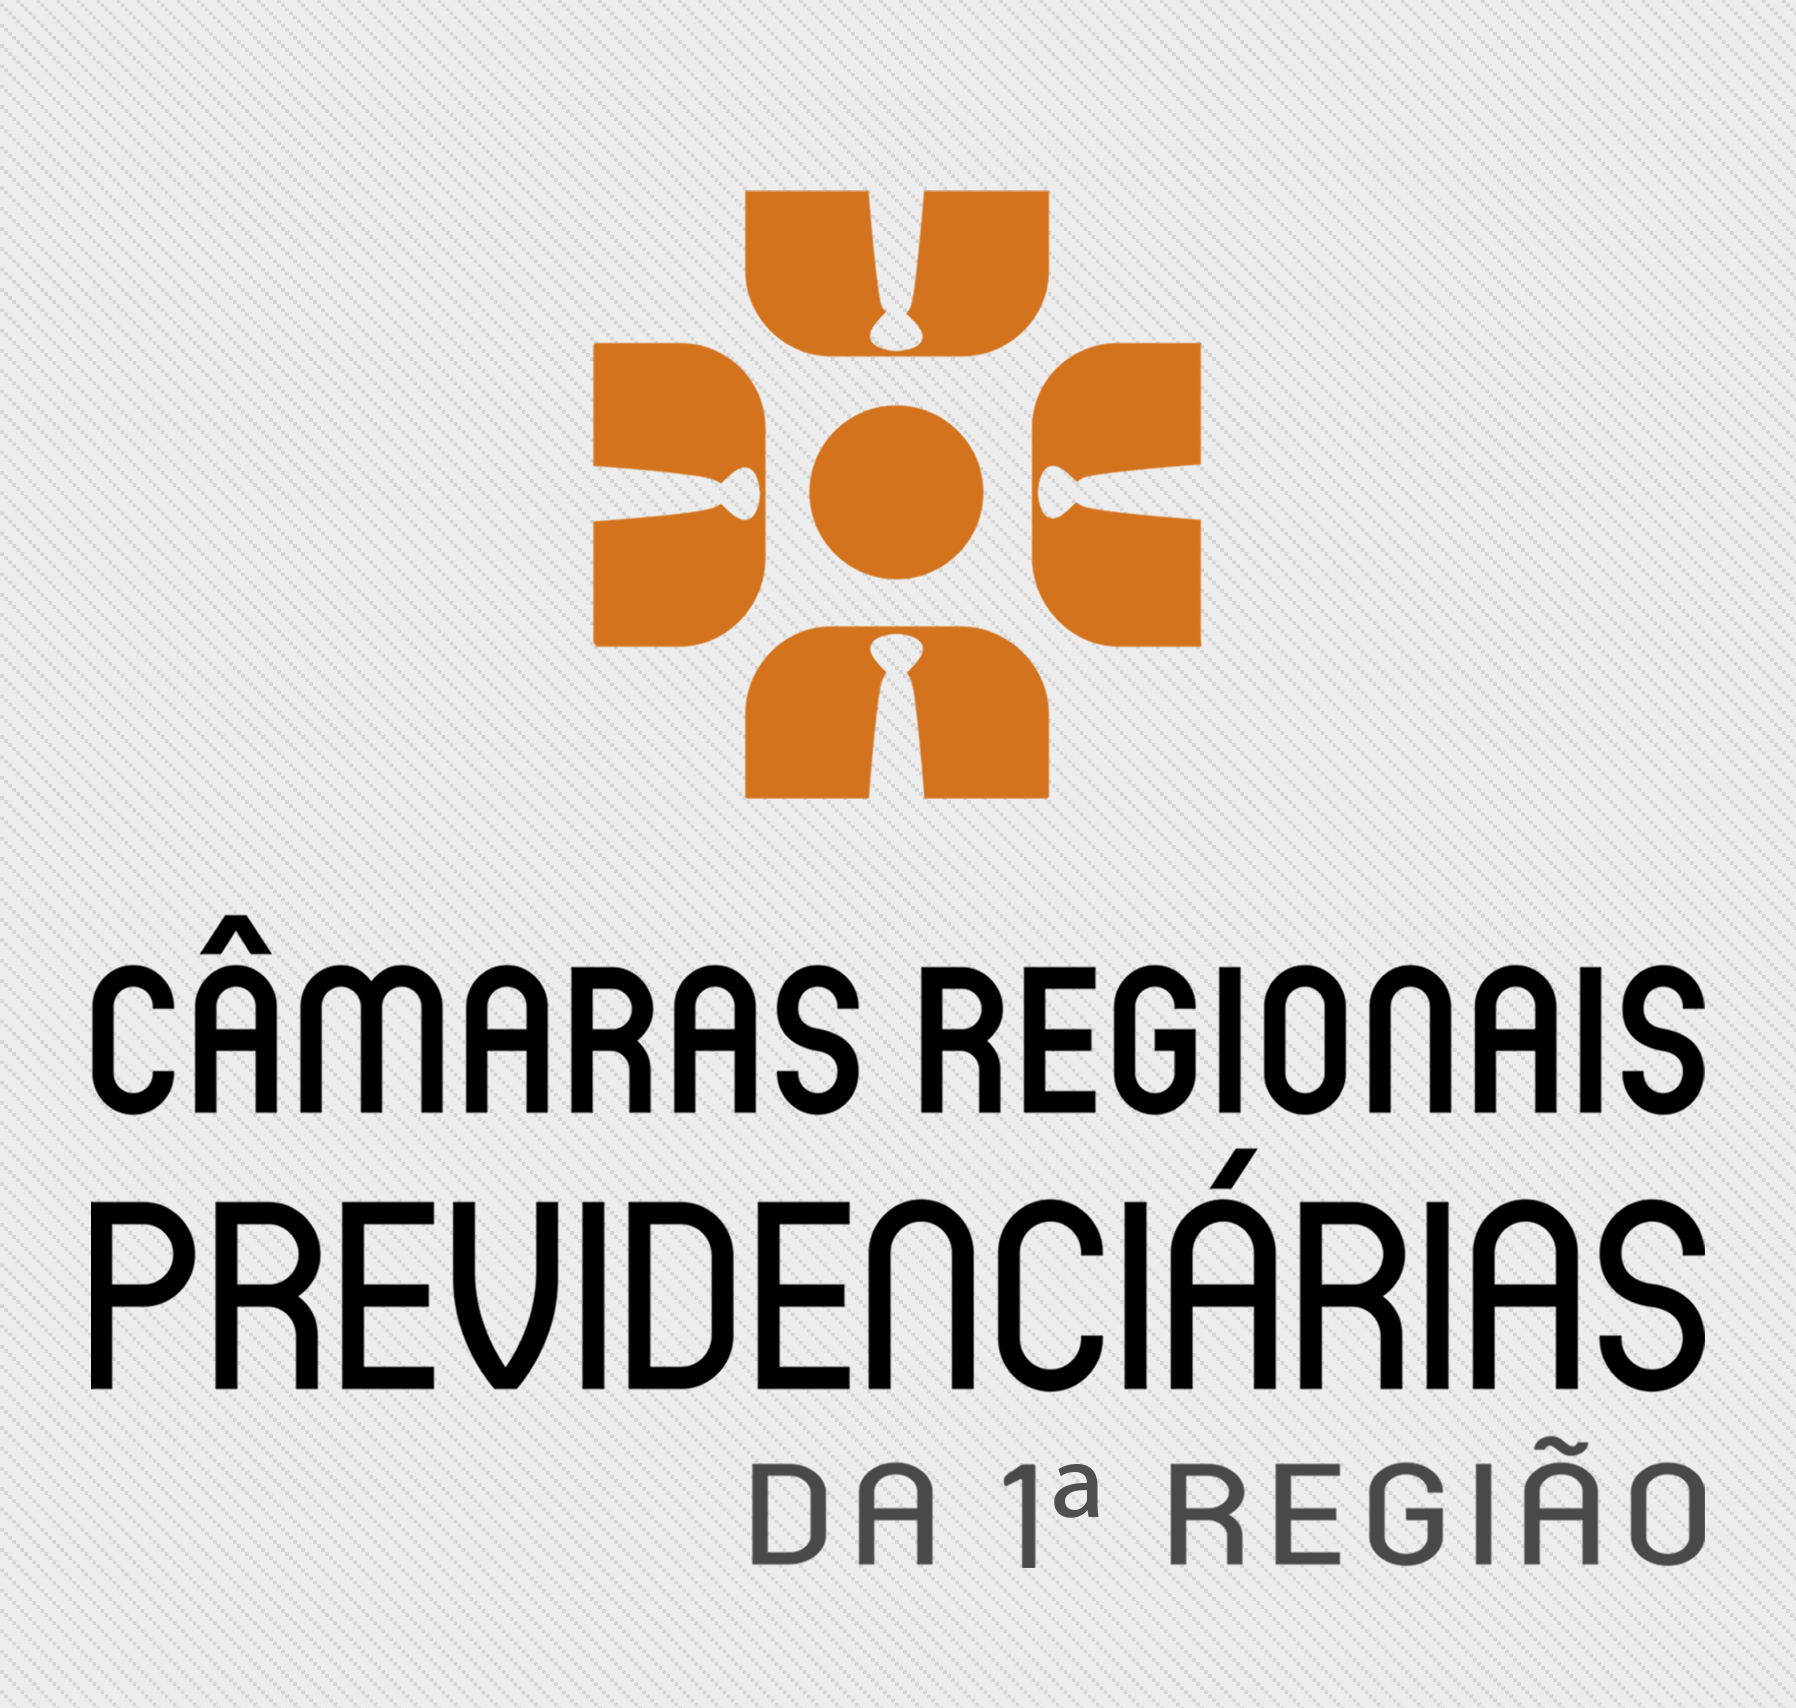 INSTITUCIONAL: Estendido o prazo de funcionamento das Câmaras Regionais Previdenciárias da 1ª Região